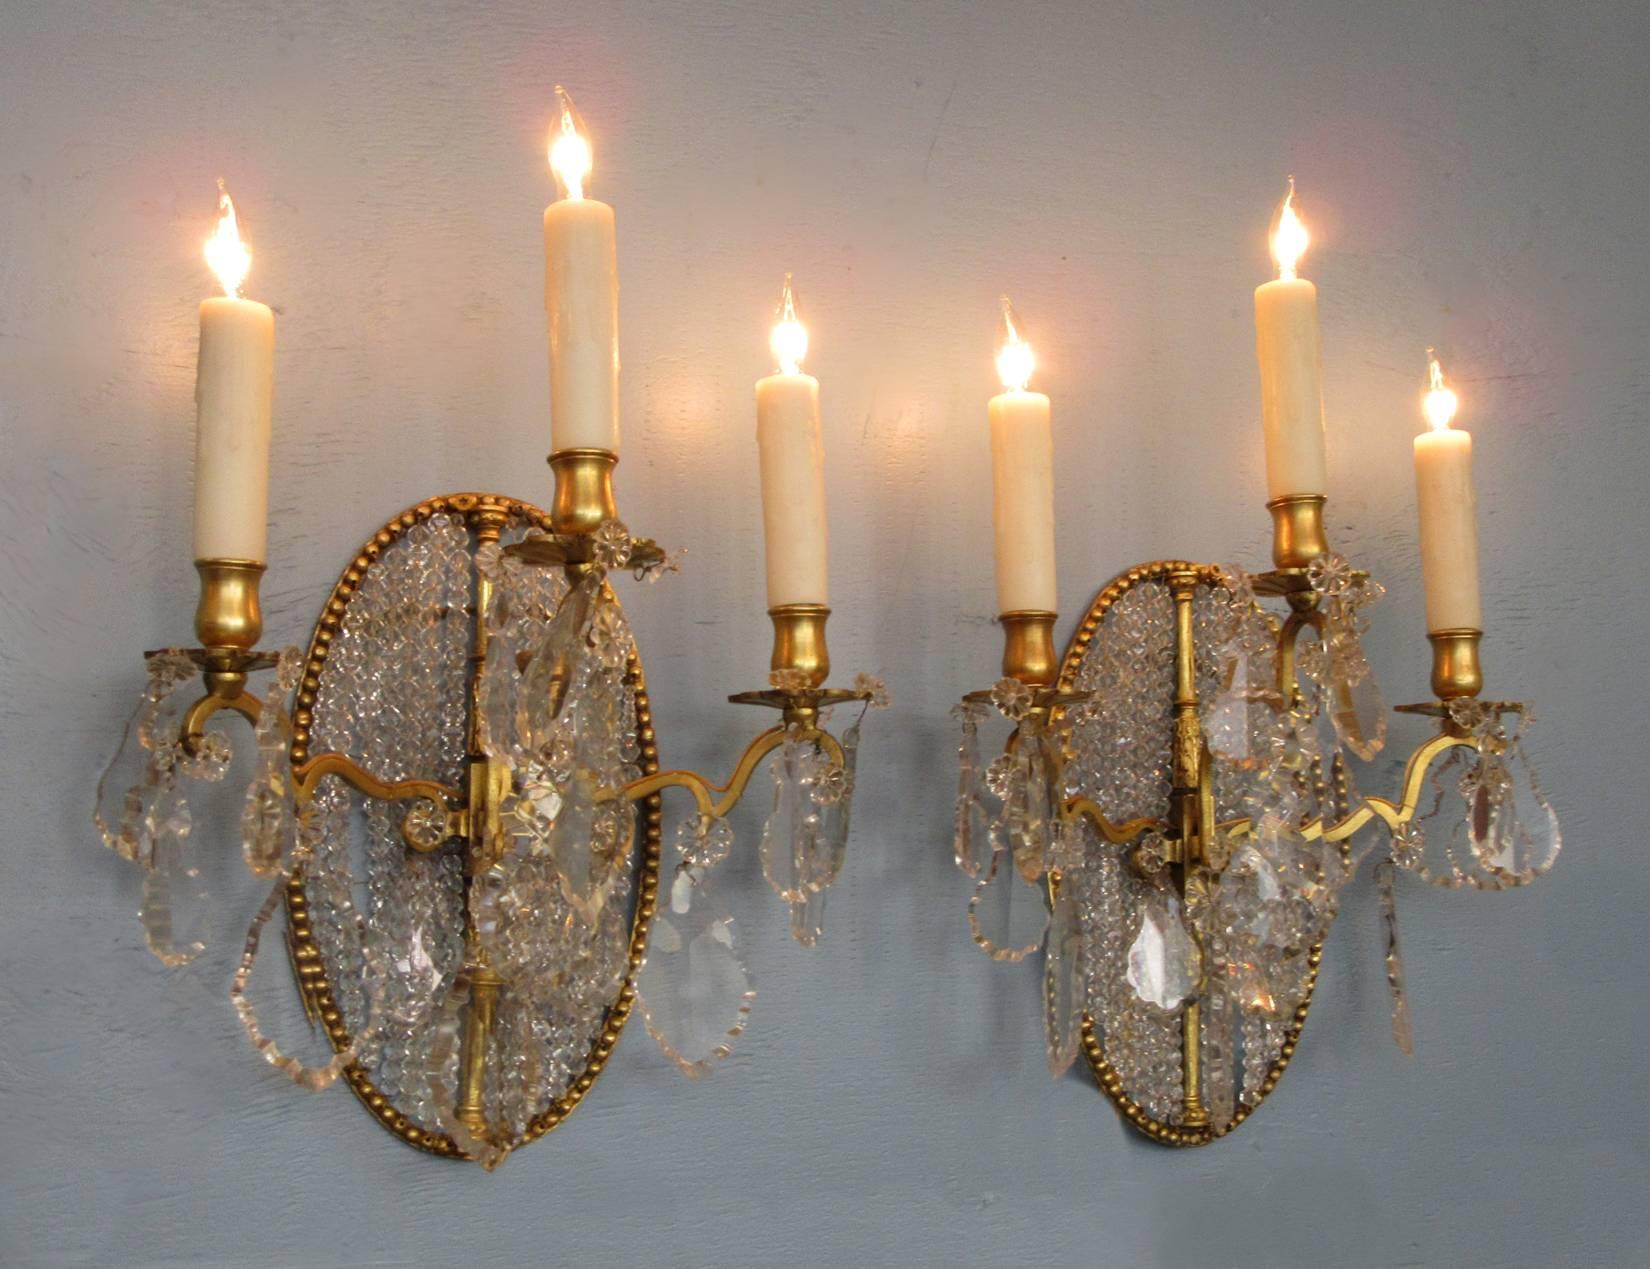 Paire d'appliques néoclassiques italiennes du XIXe siècle en bronze doré et cristal, vers 1830, chacune présentant trois bras de bougie et un médaillon en cristal perlé. La paire a récemment été nettoyée et recâblée avec des douilles en